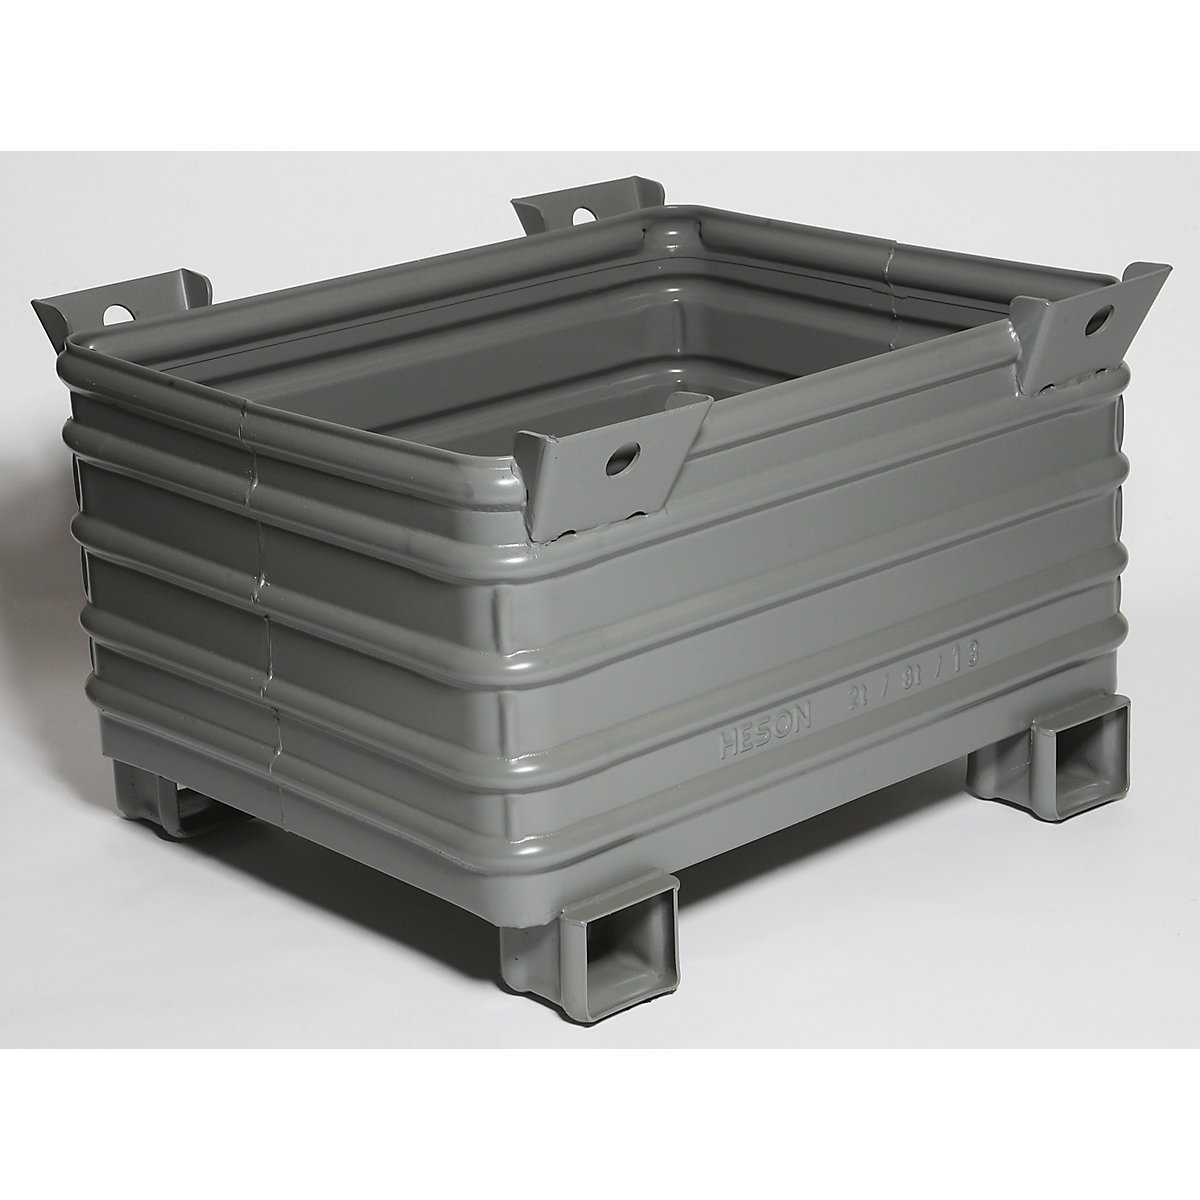 Heson Schwerlast-Stapelbehälter, BxL 800 x 1000 mm, mit U-förmigen Füßen, grau lackiert, ab 1 Stk